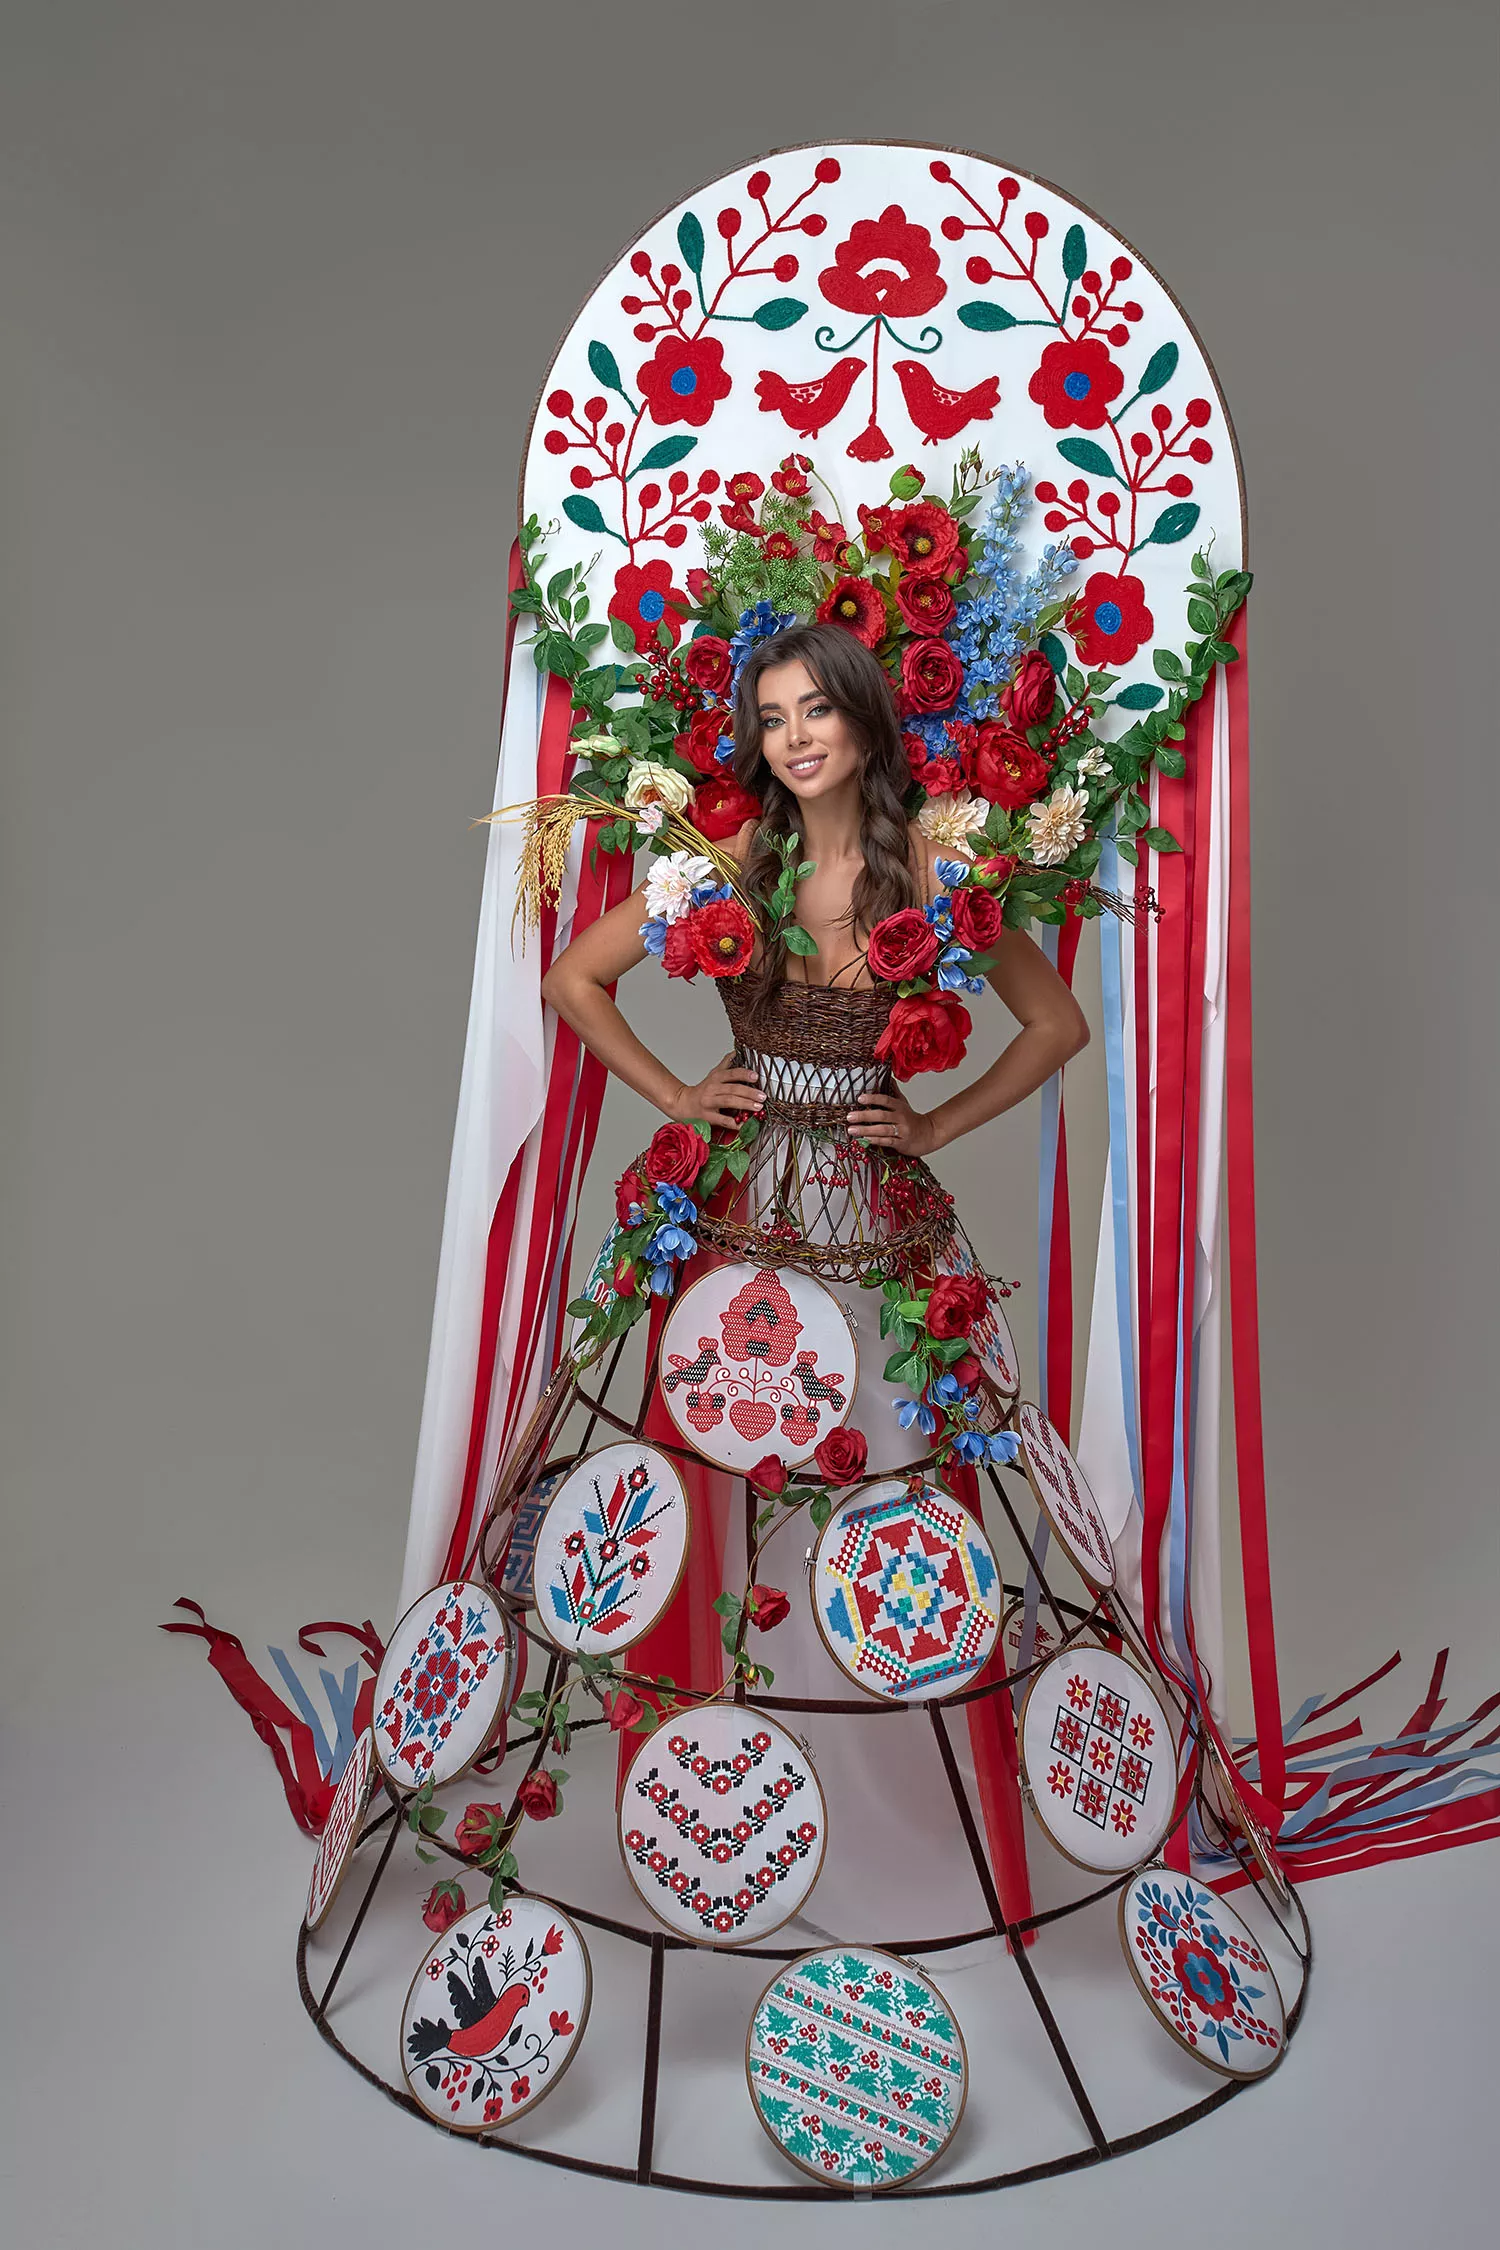 Національний костюм Анни Неплях важить понад 15 кілограм